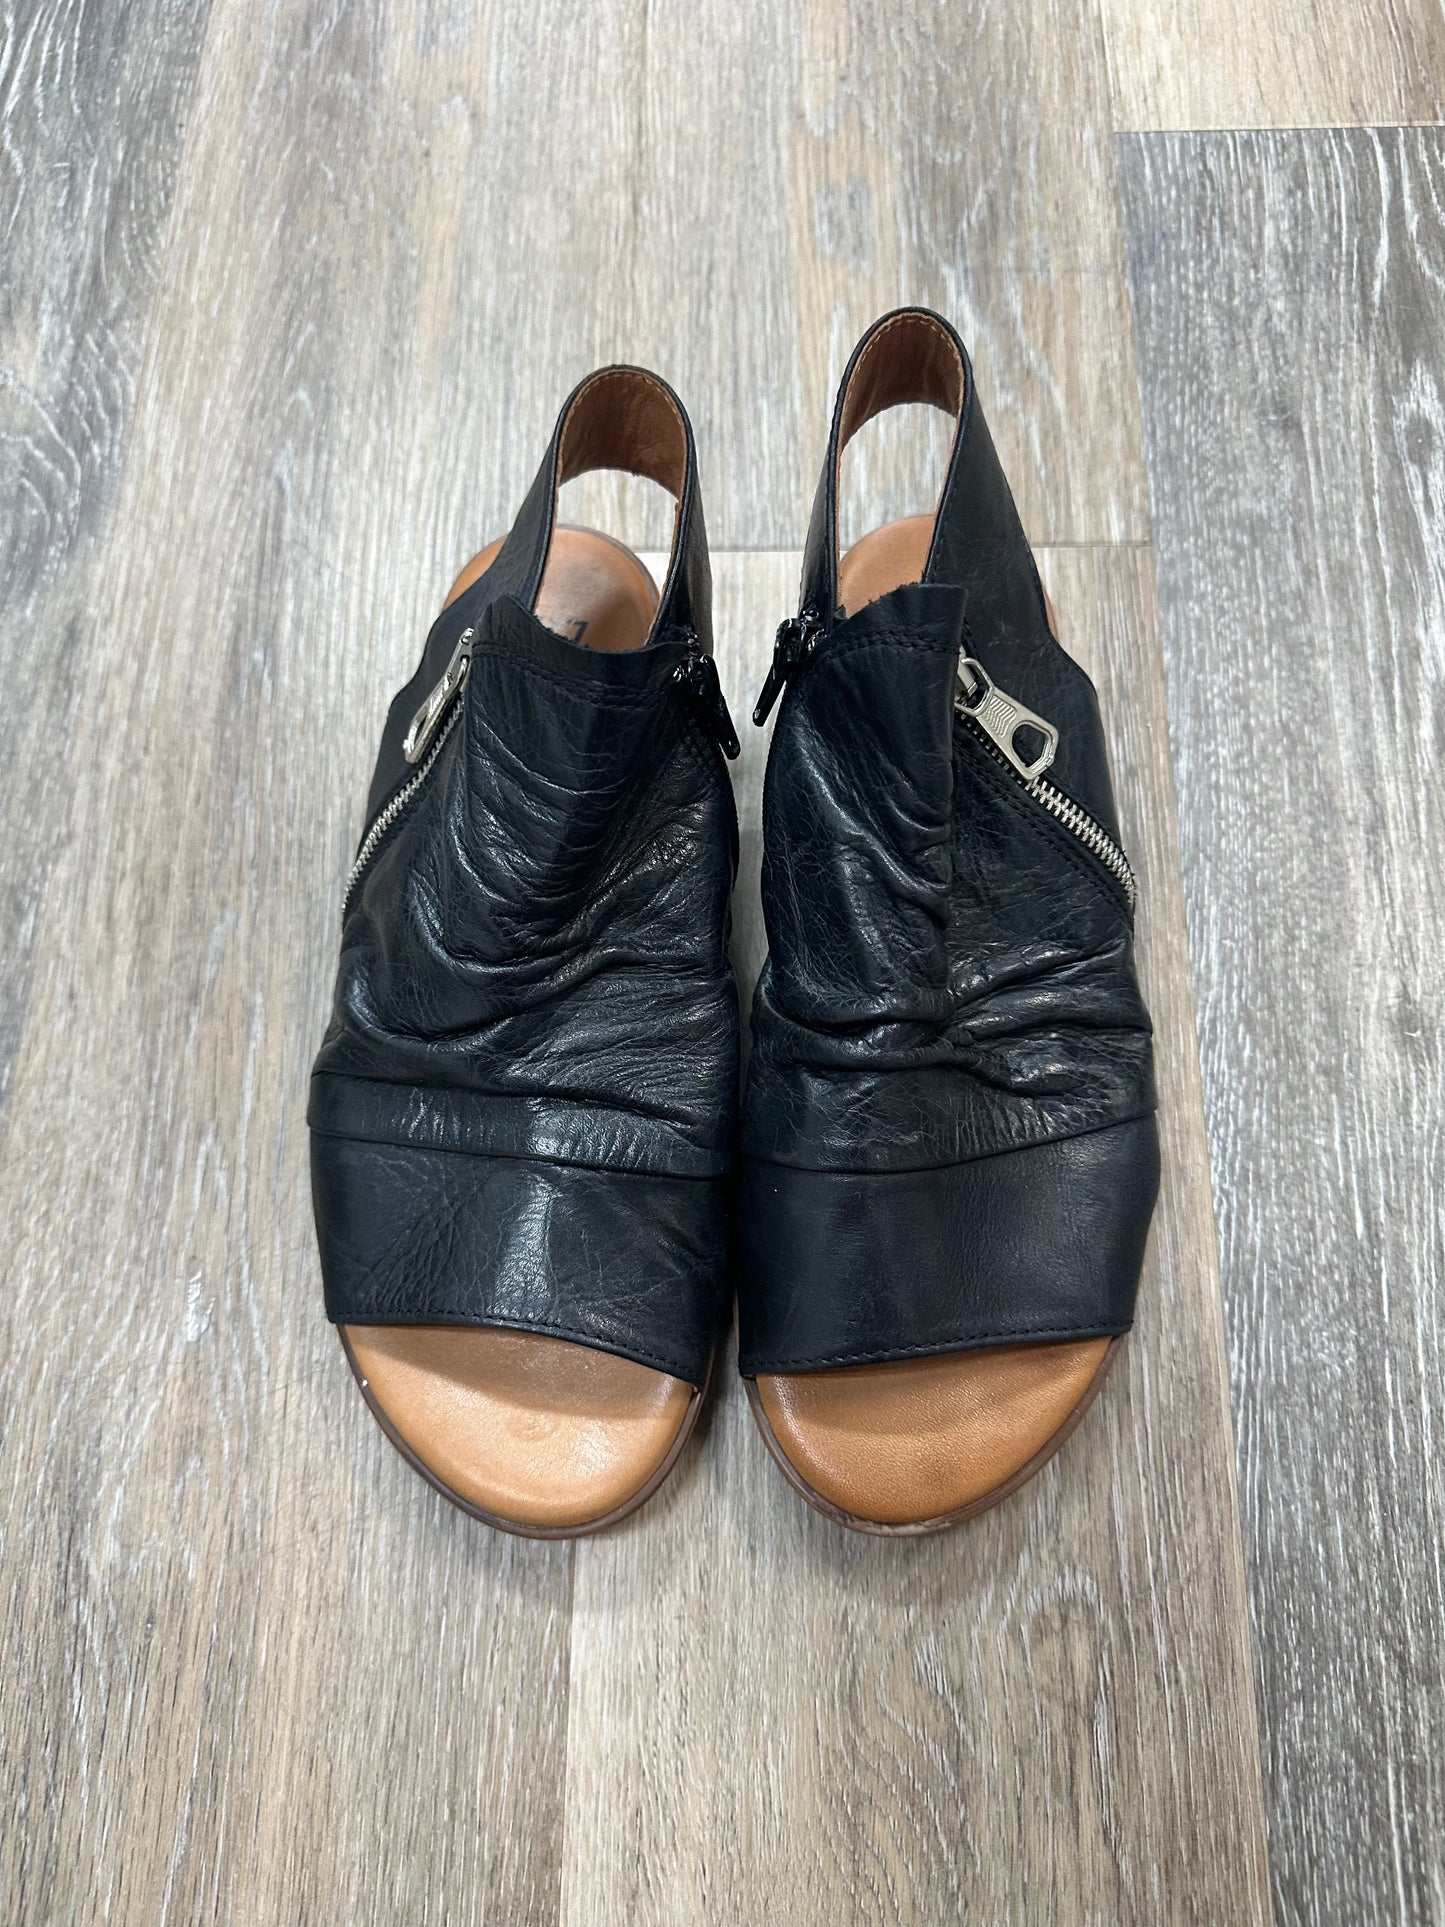 Sandals Flats By Miz Mooz  Size: 7.5